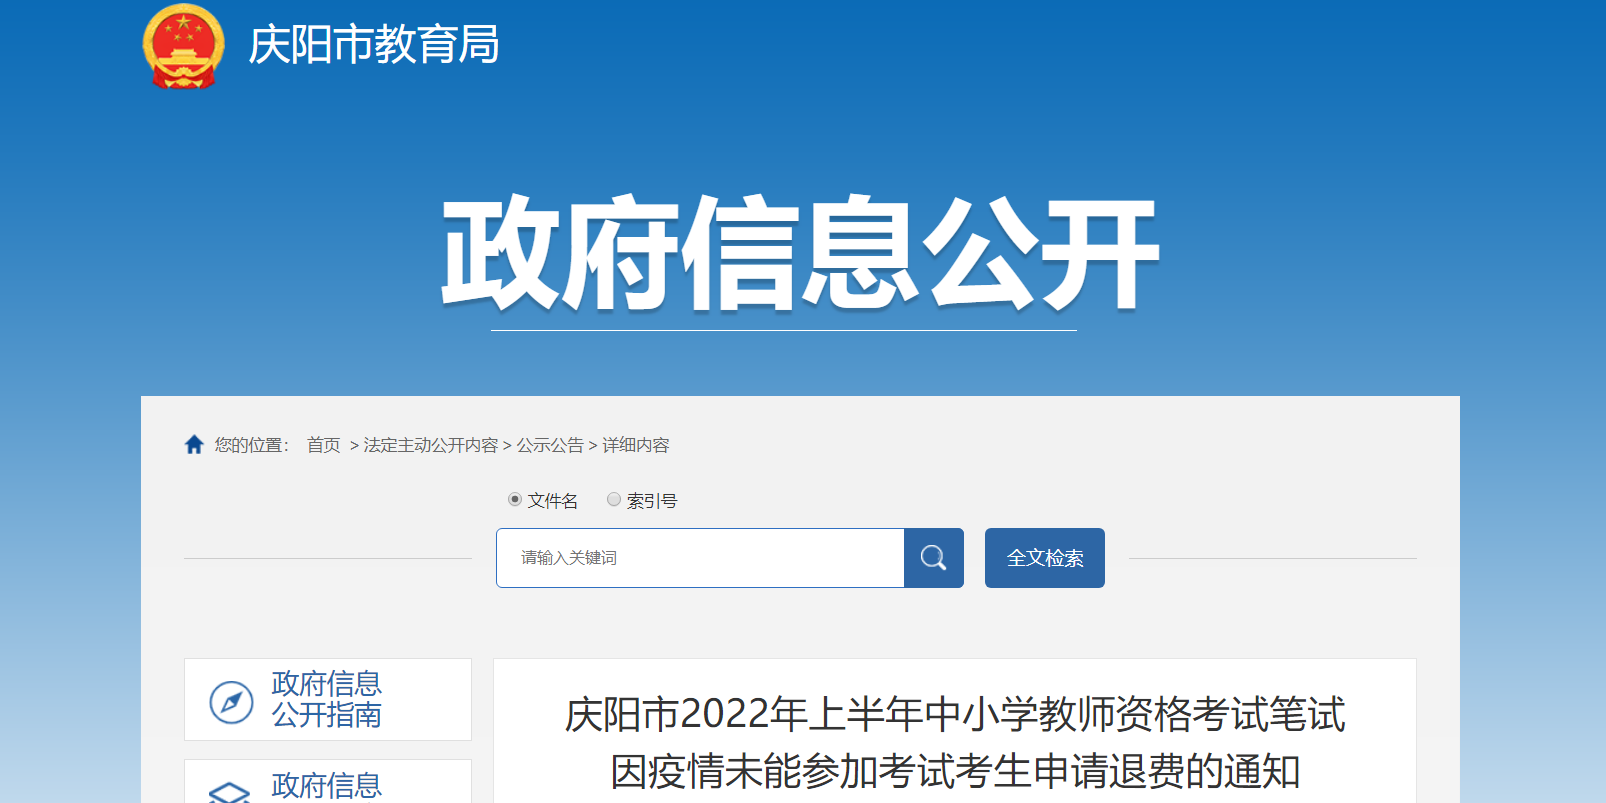 2022年上半年甘肃庆阳中小学教师资格考试笔试申请退费通知